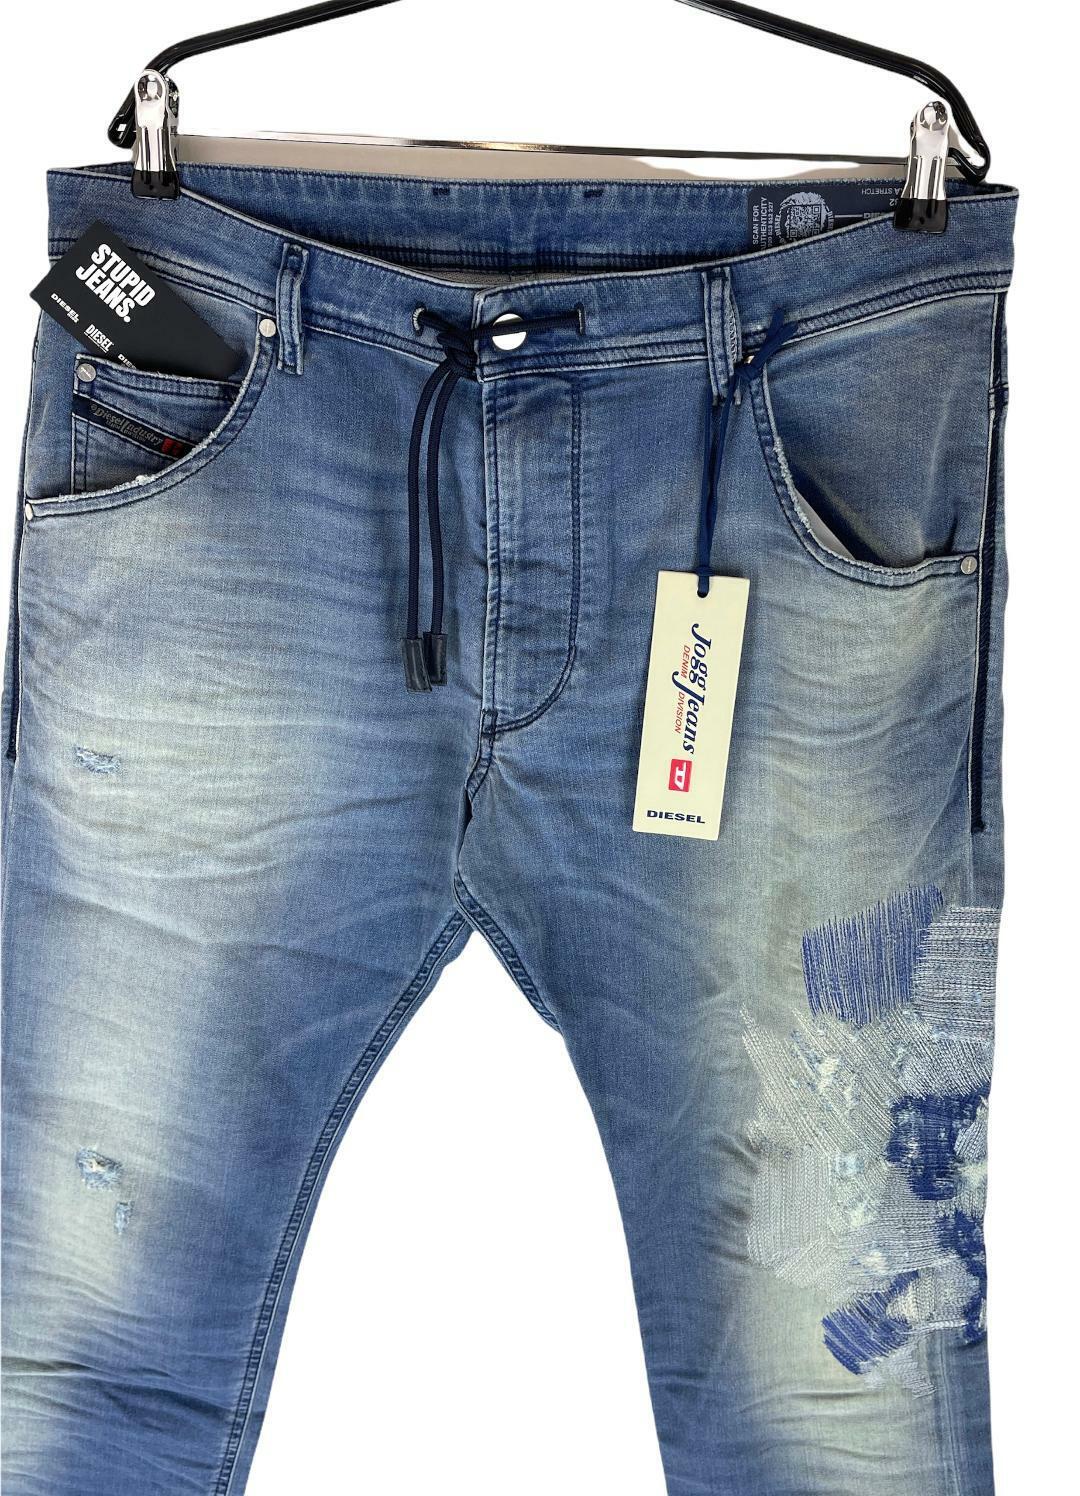 単品価格2020SS DIESEL KROOLEY-T087AC joggジーンズ パンツ